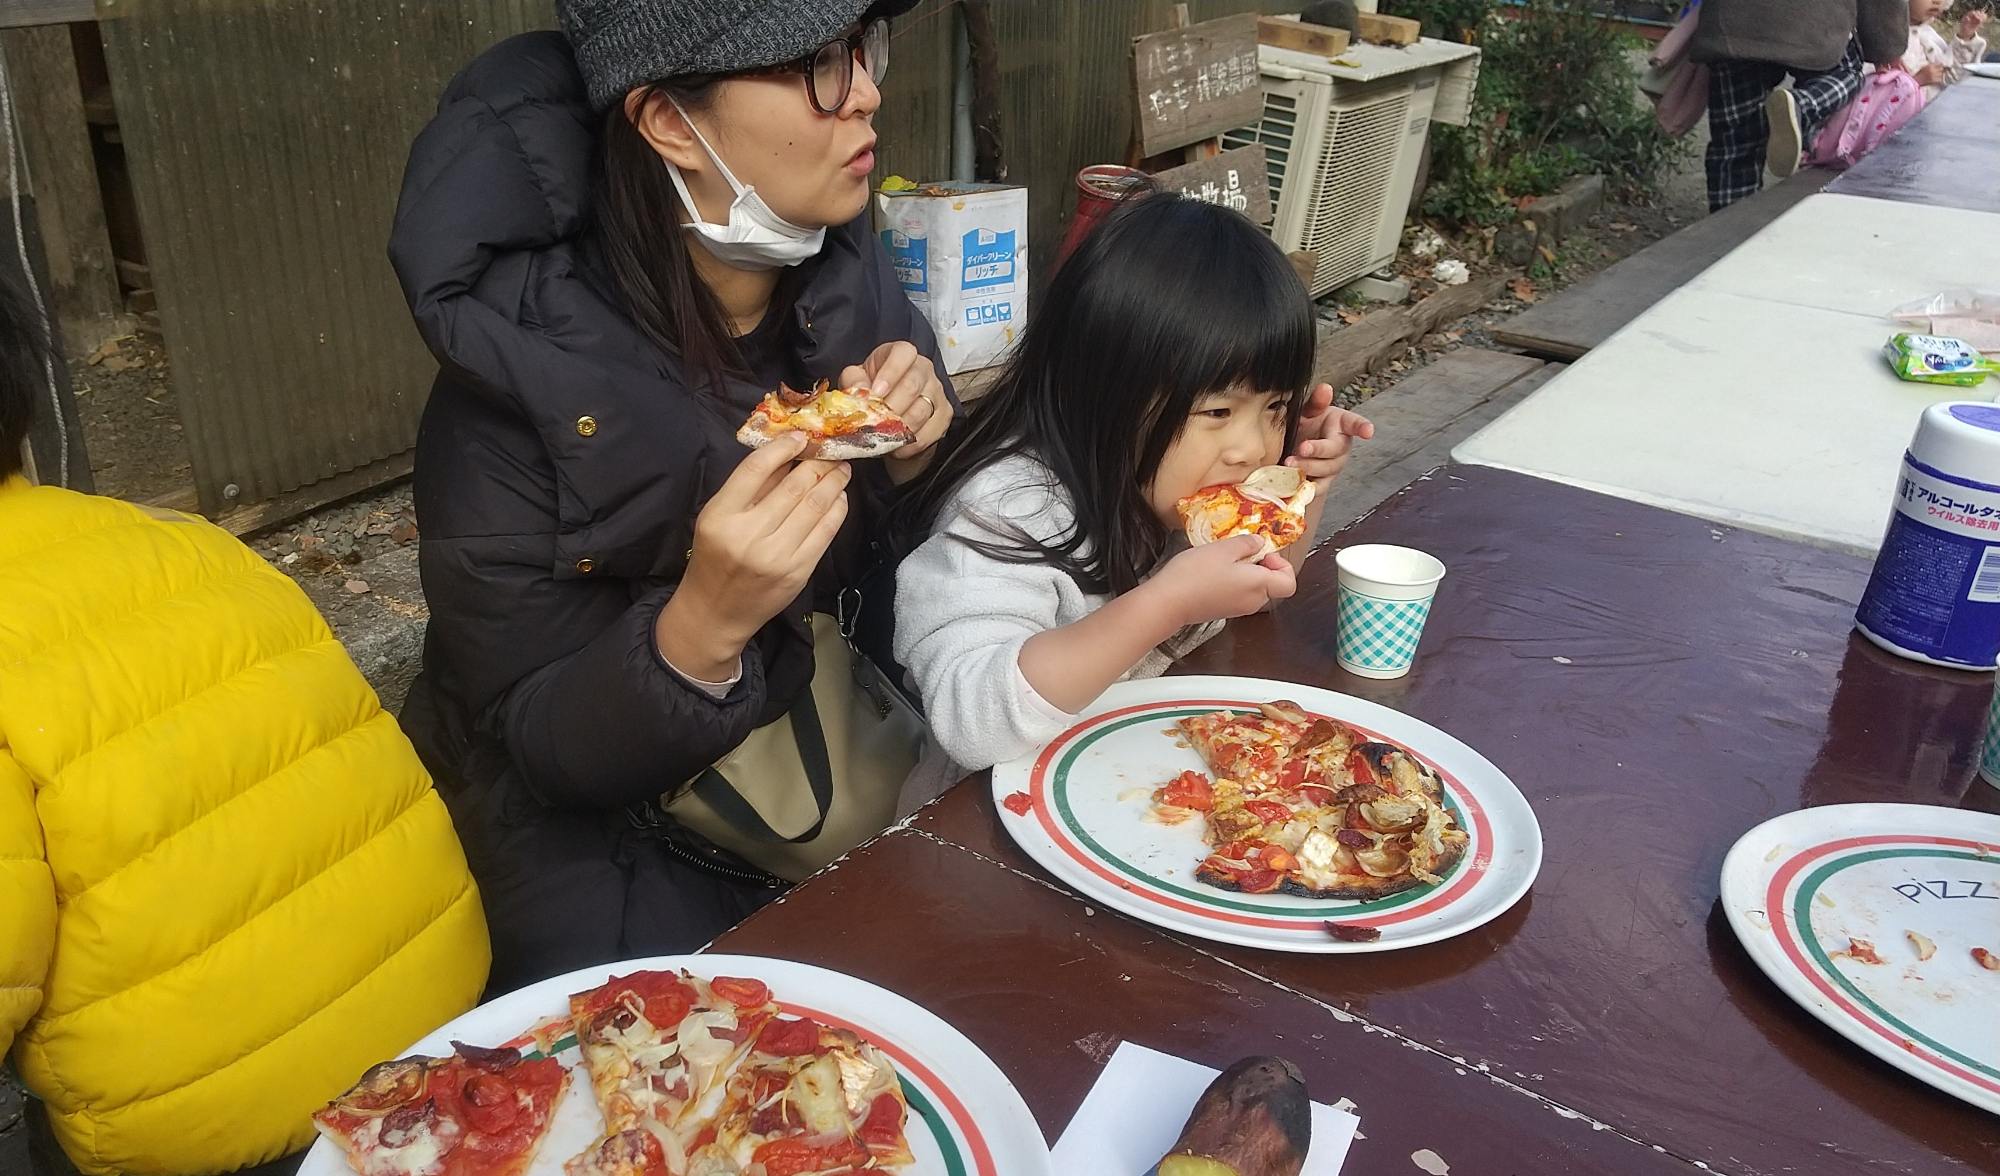 ピザを食べる子ども